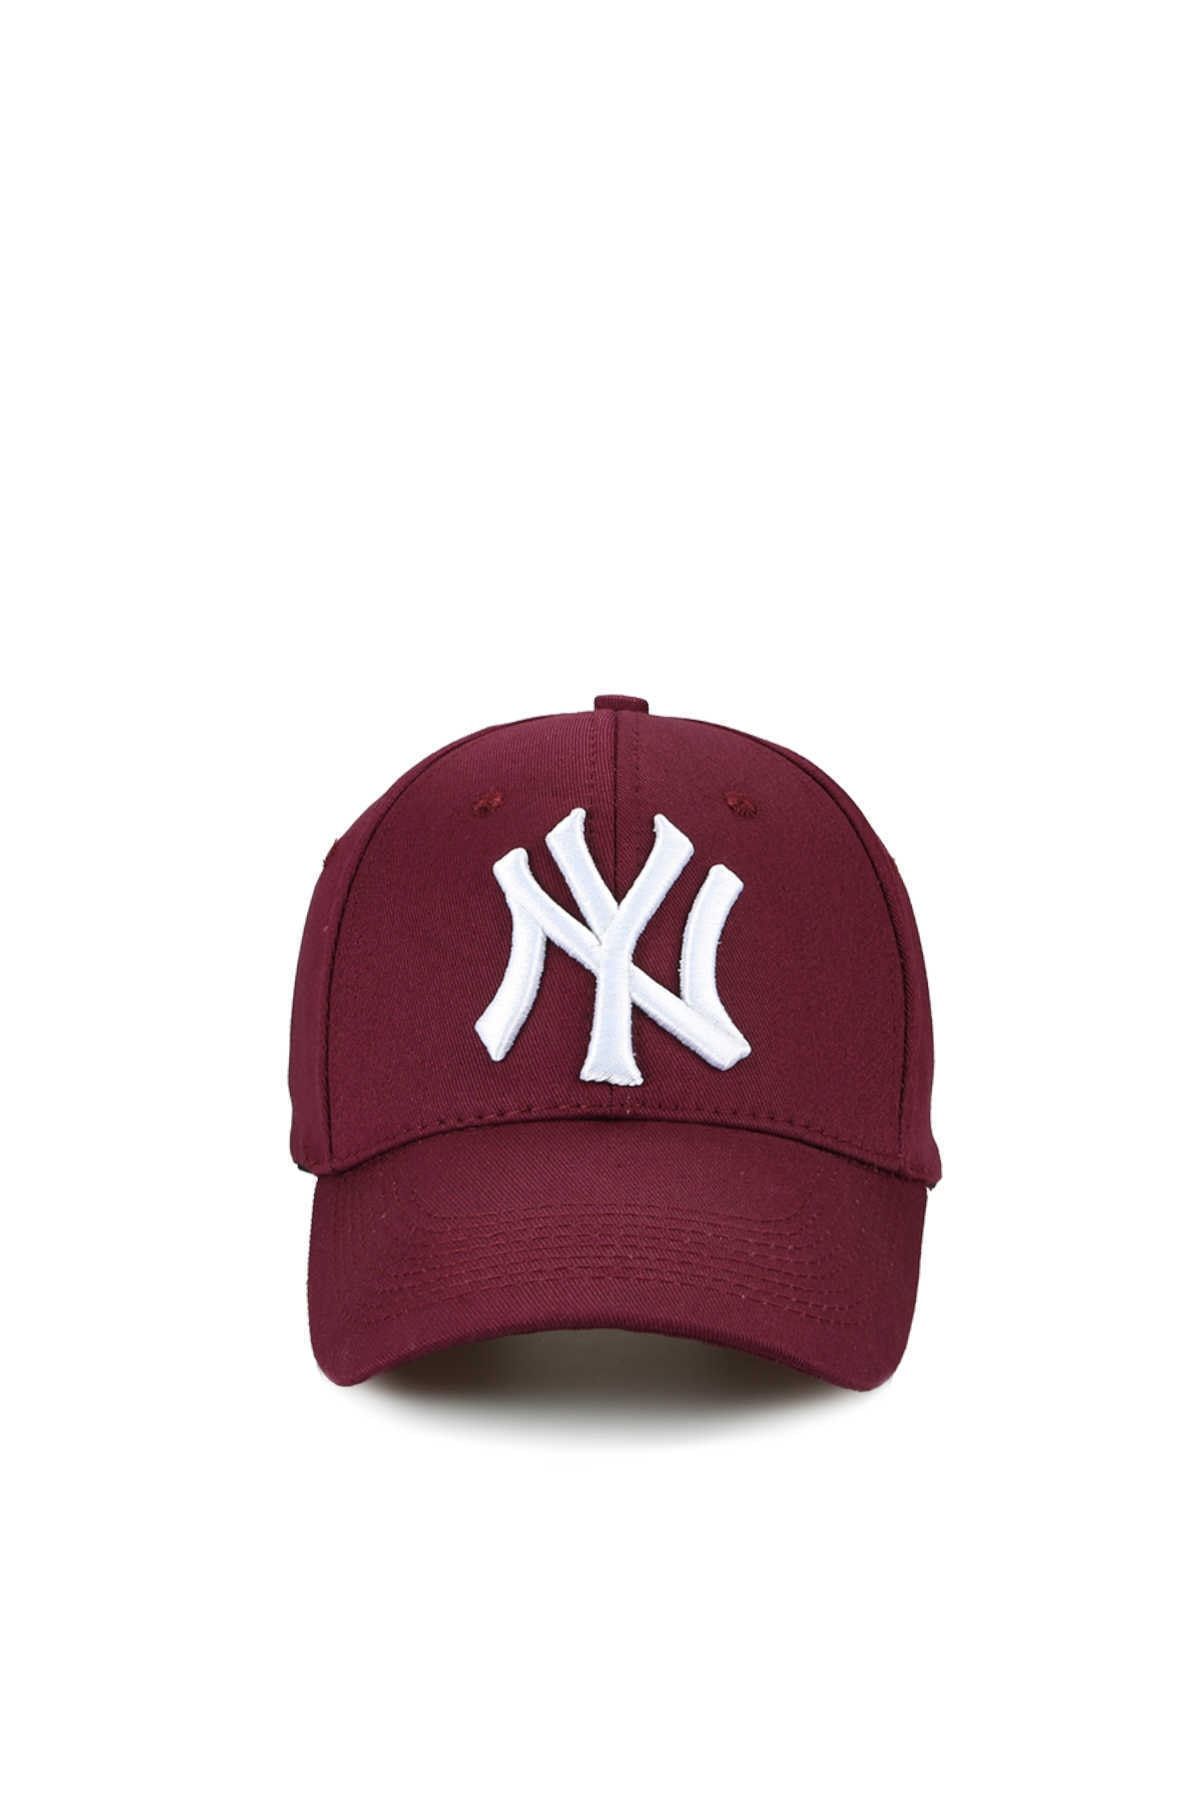 CosmoOutlet Unisex Bordo  Ny New York Yankees Şapka